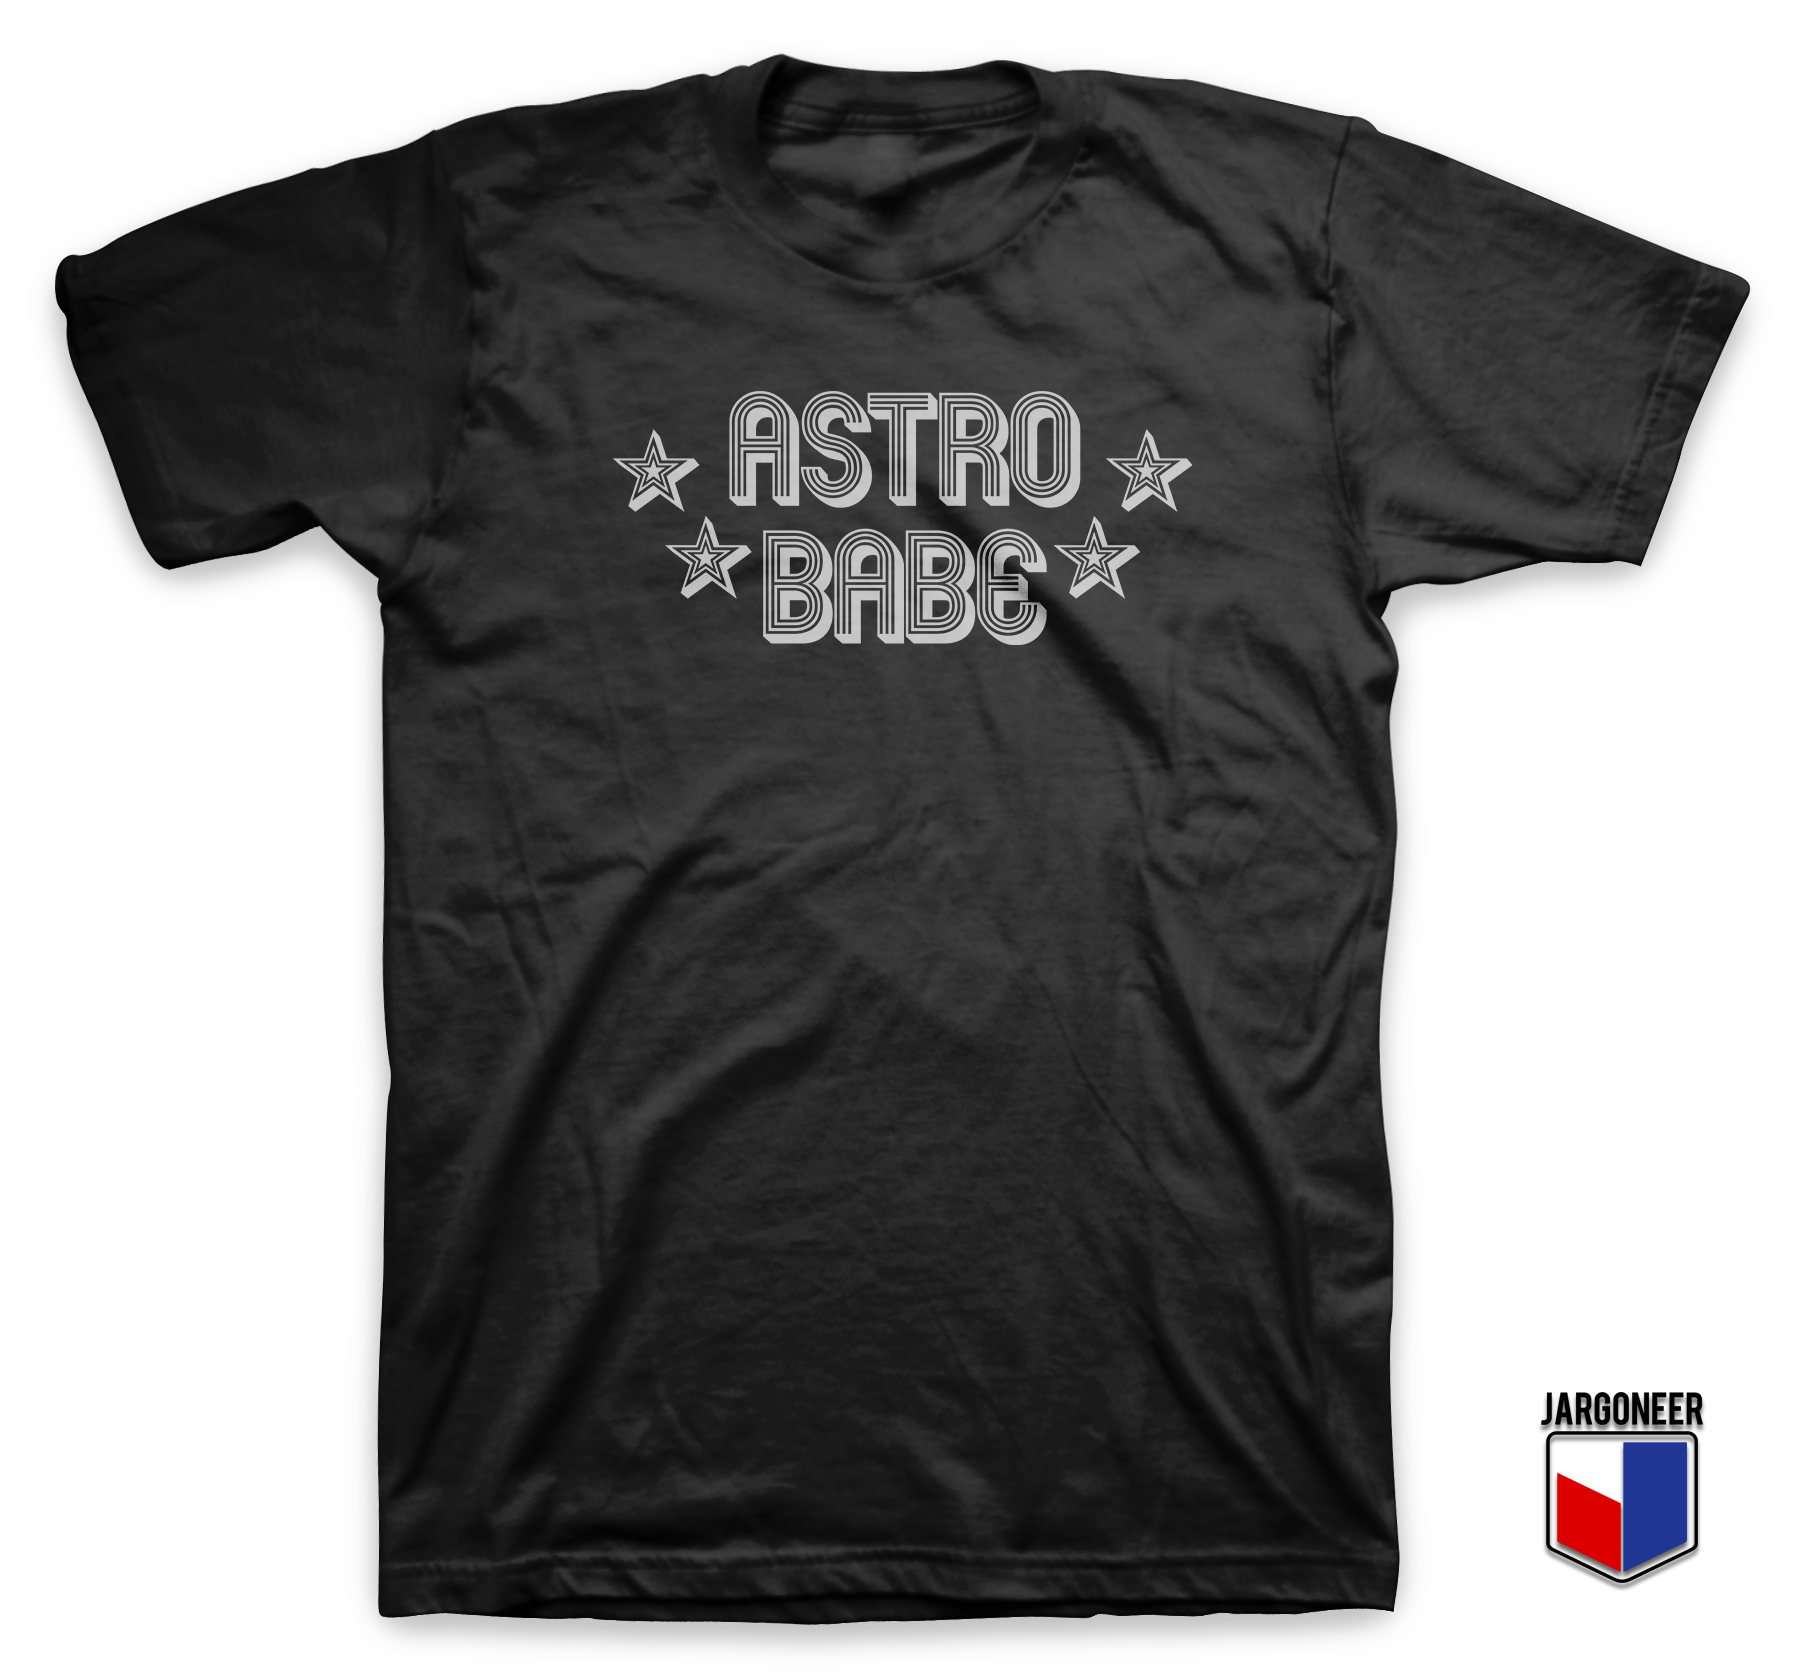 Astro Babe Black T Shirt - Shop Unique Graphic Cool Shirt Designs